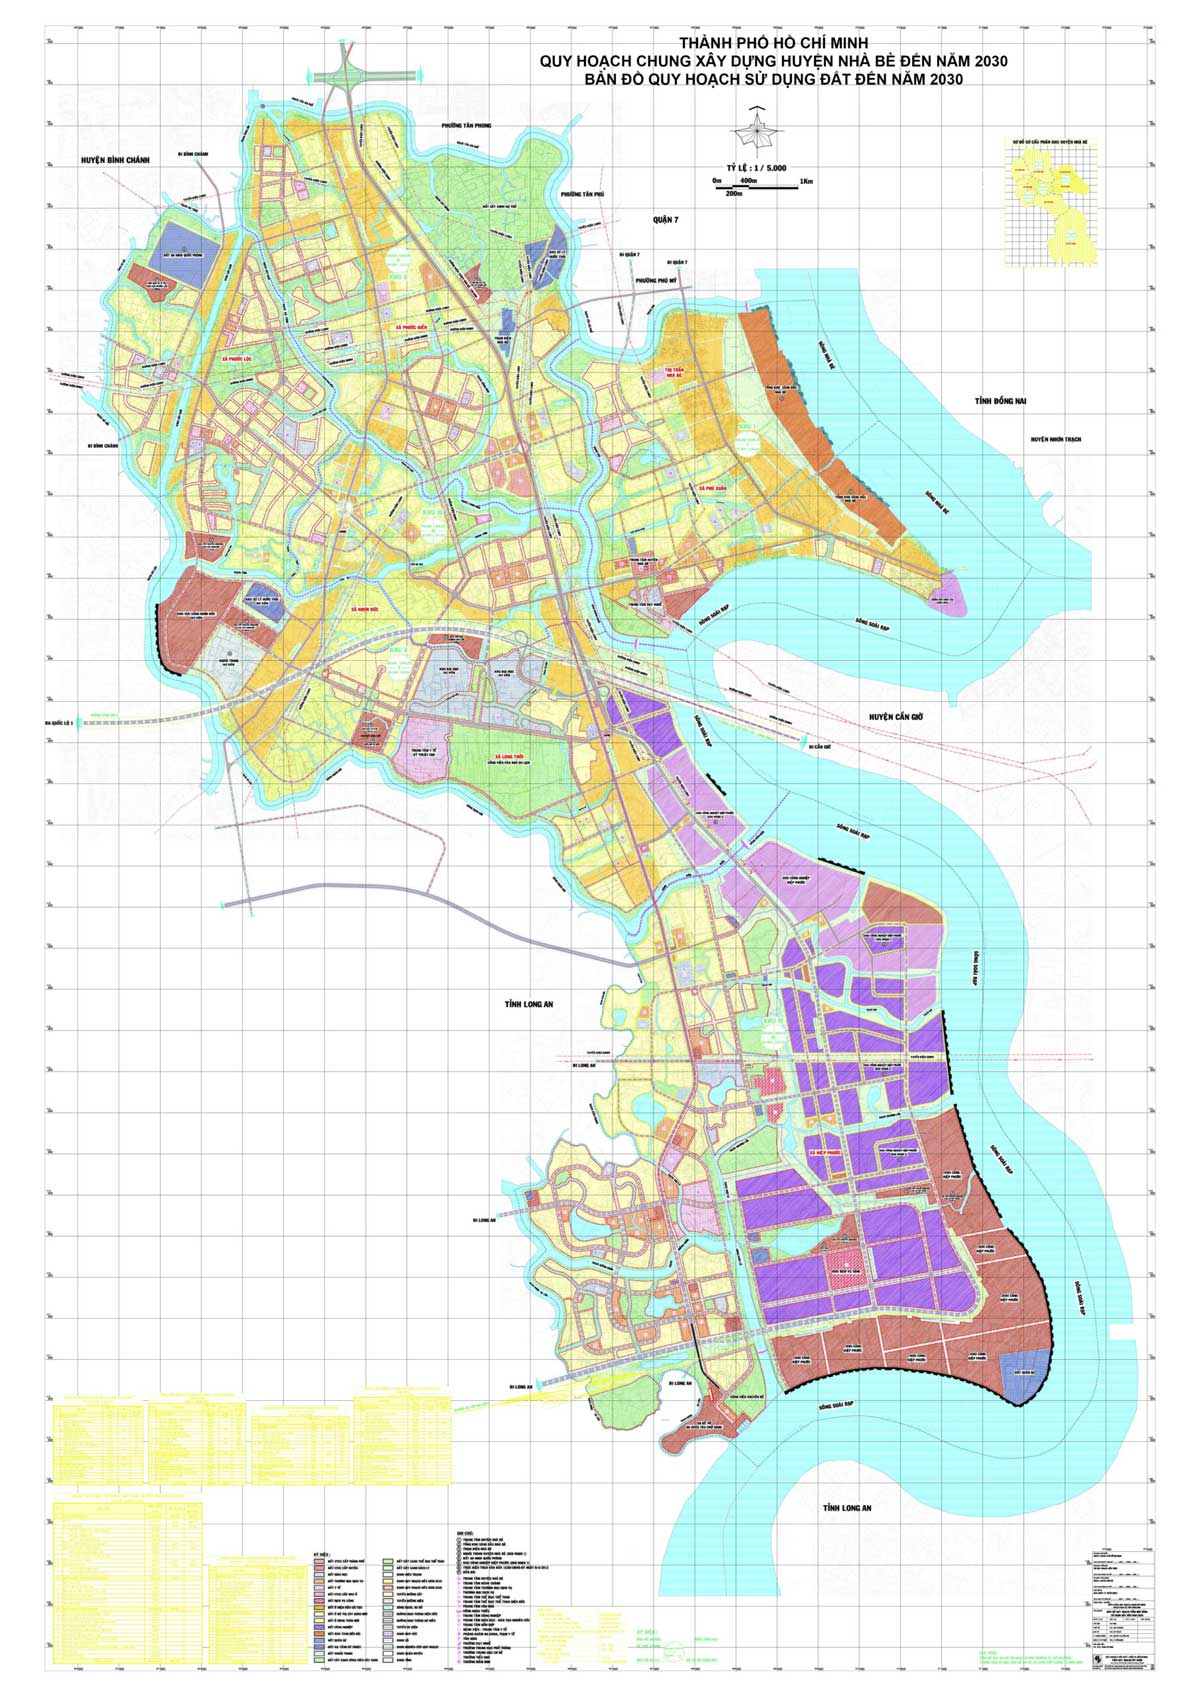 Bản đồ QHSDĐ Huyện Nhà Bè đến năm 2030